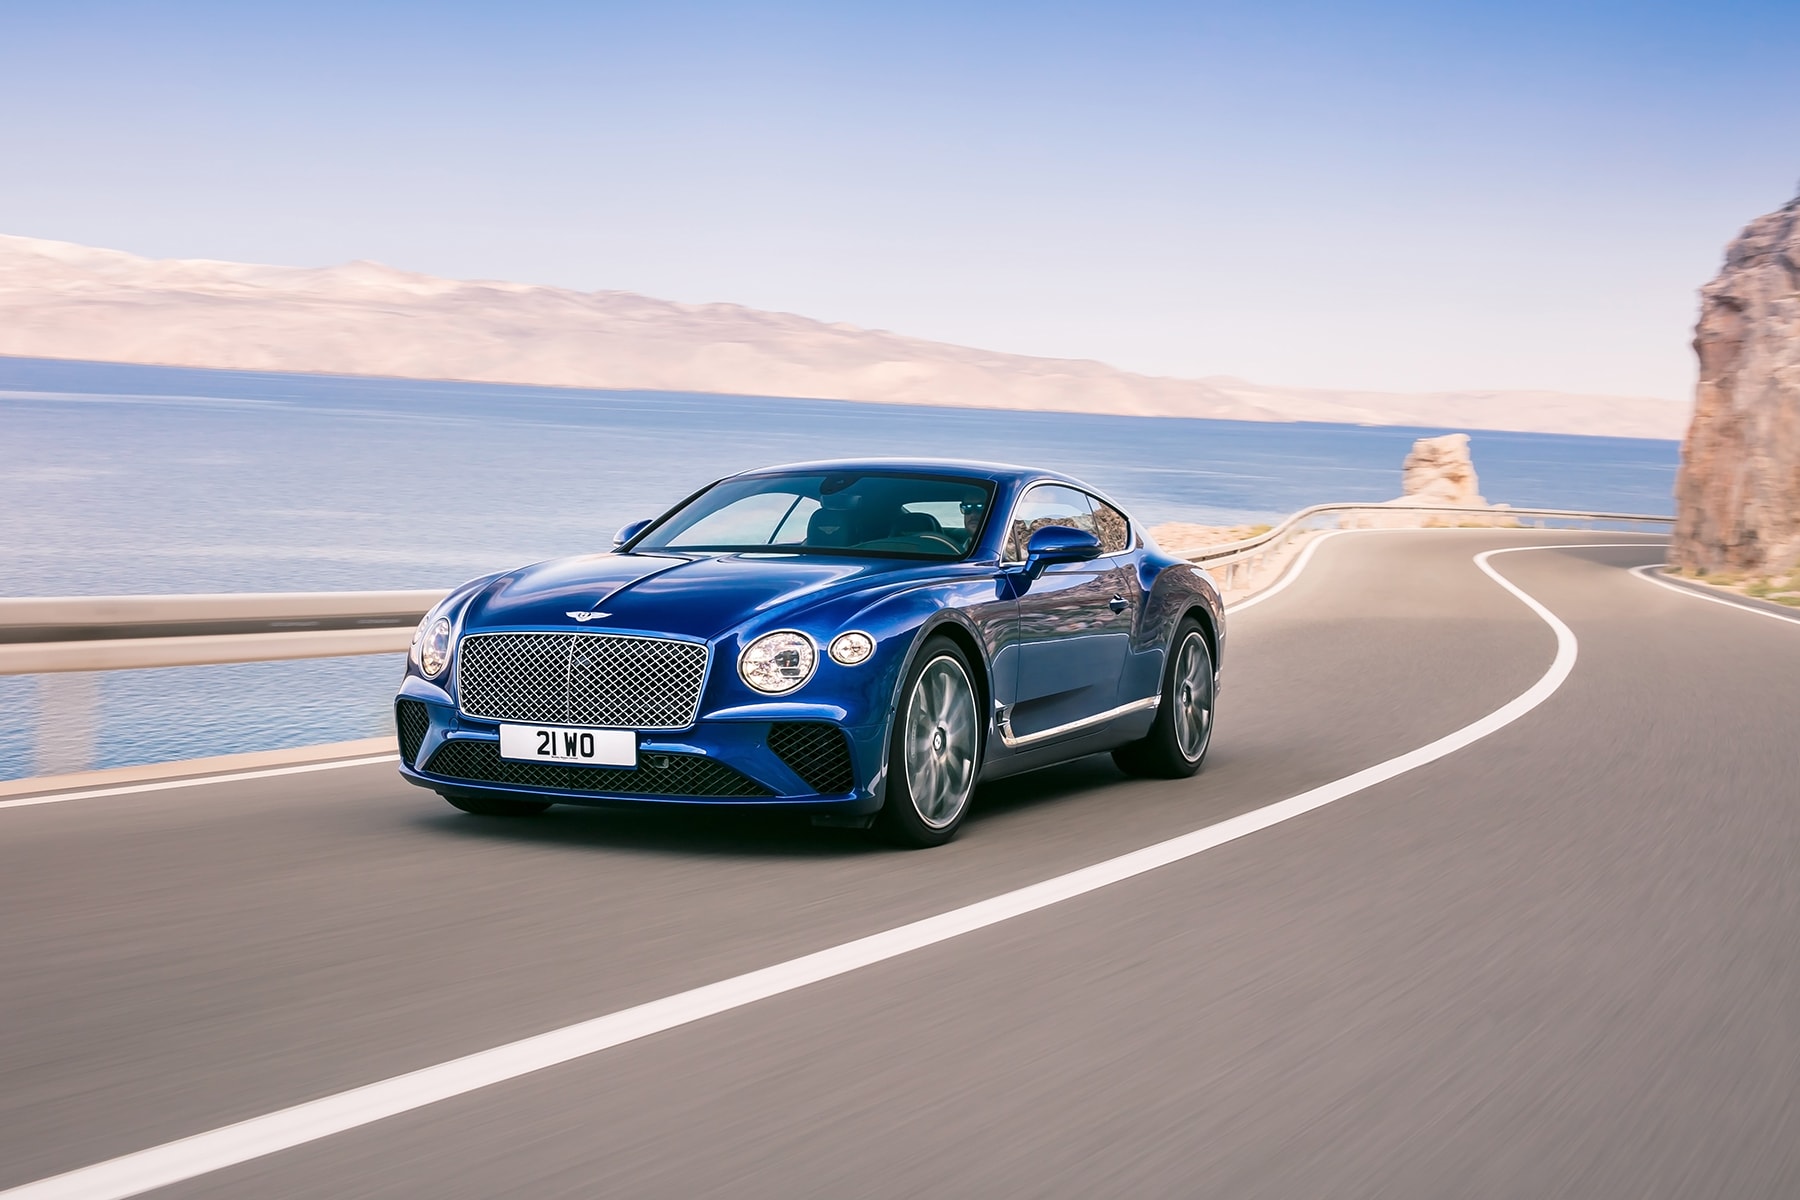 2019 年式樣 Bentley Continental GT W12 豪華轎車澎湃登場